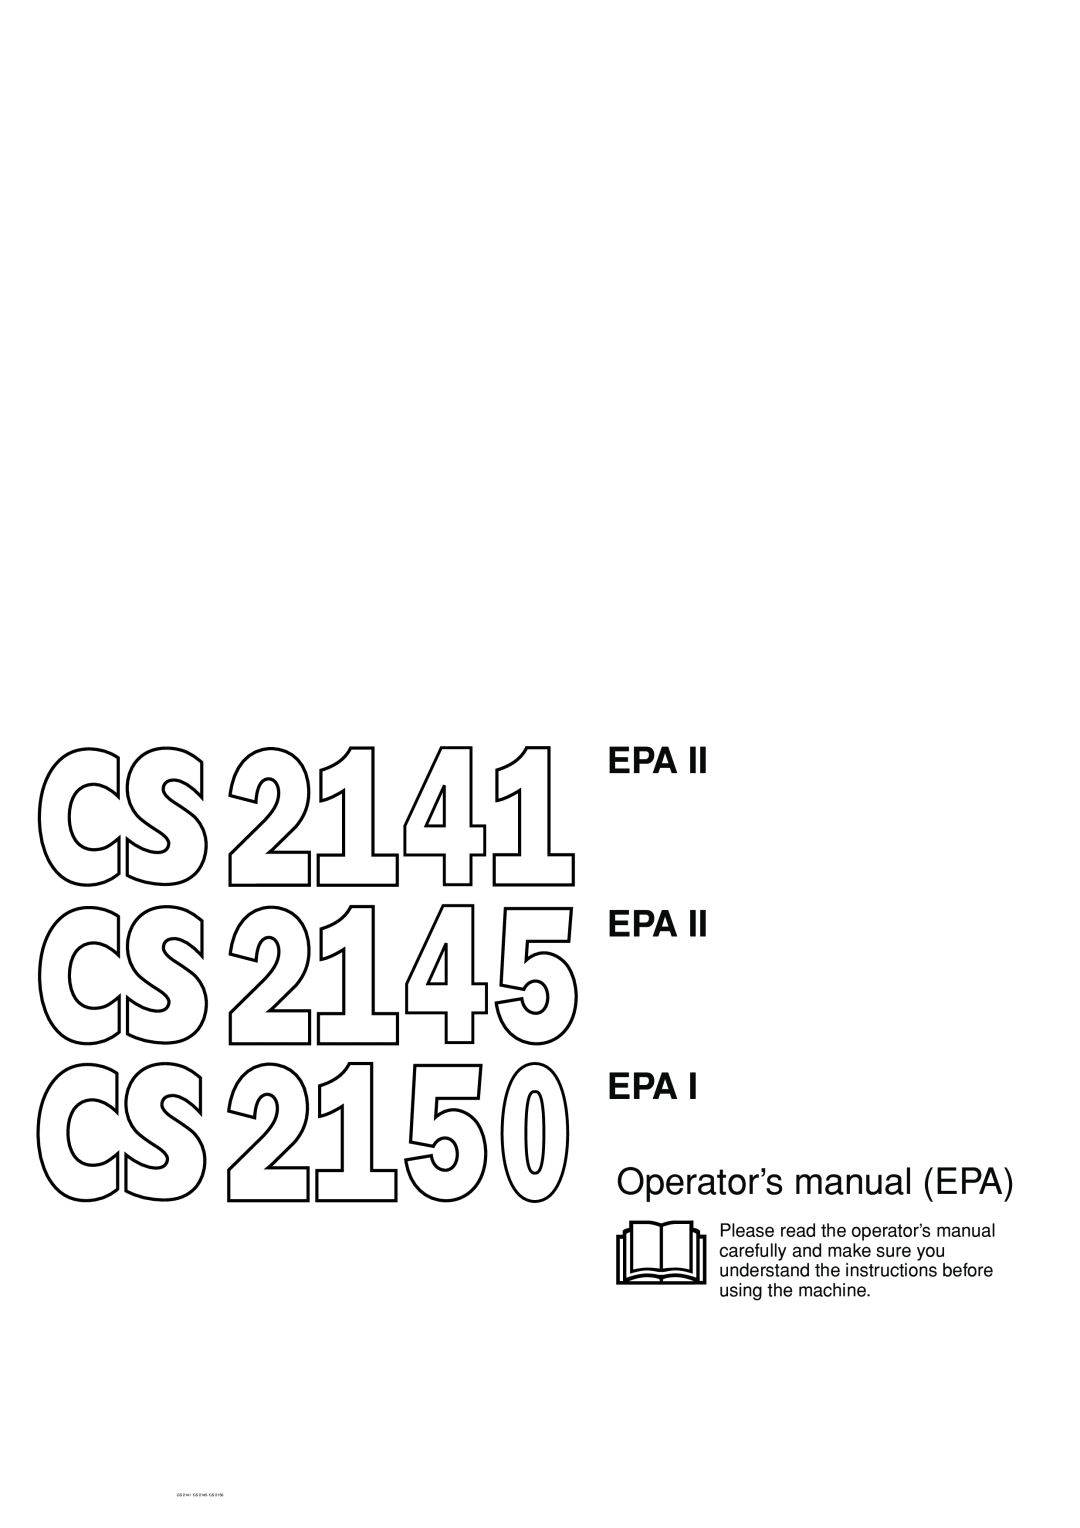 Jonsered CS 2145 EPA II, CS 2150 EPA I, CS 2141 EPA II manual Epa Epa Epa, Operator’s manual EPA, CS 2141 CS 2145 CS 